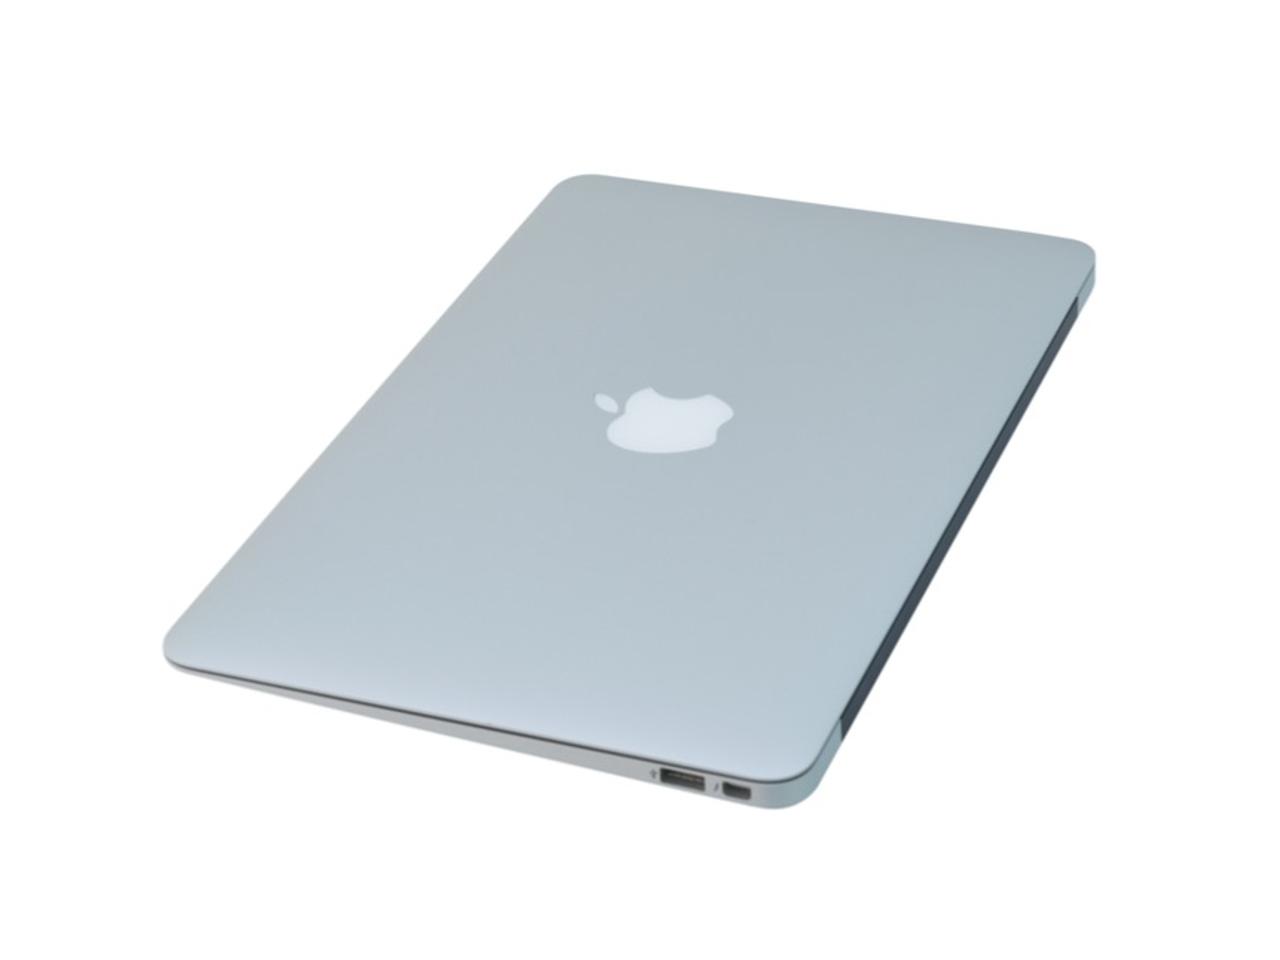 さらばAir!? 1,000ドル未満の廉価版MacBookが目下開発中らしい